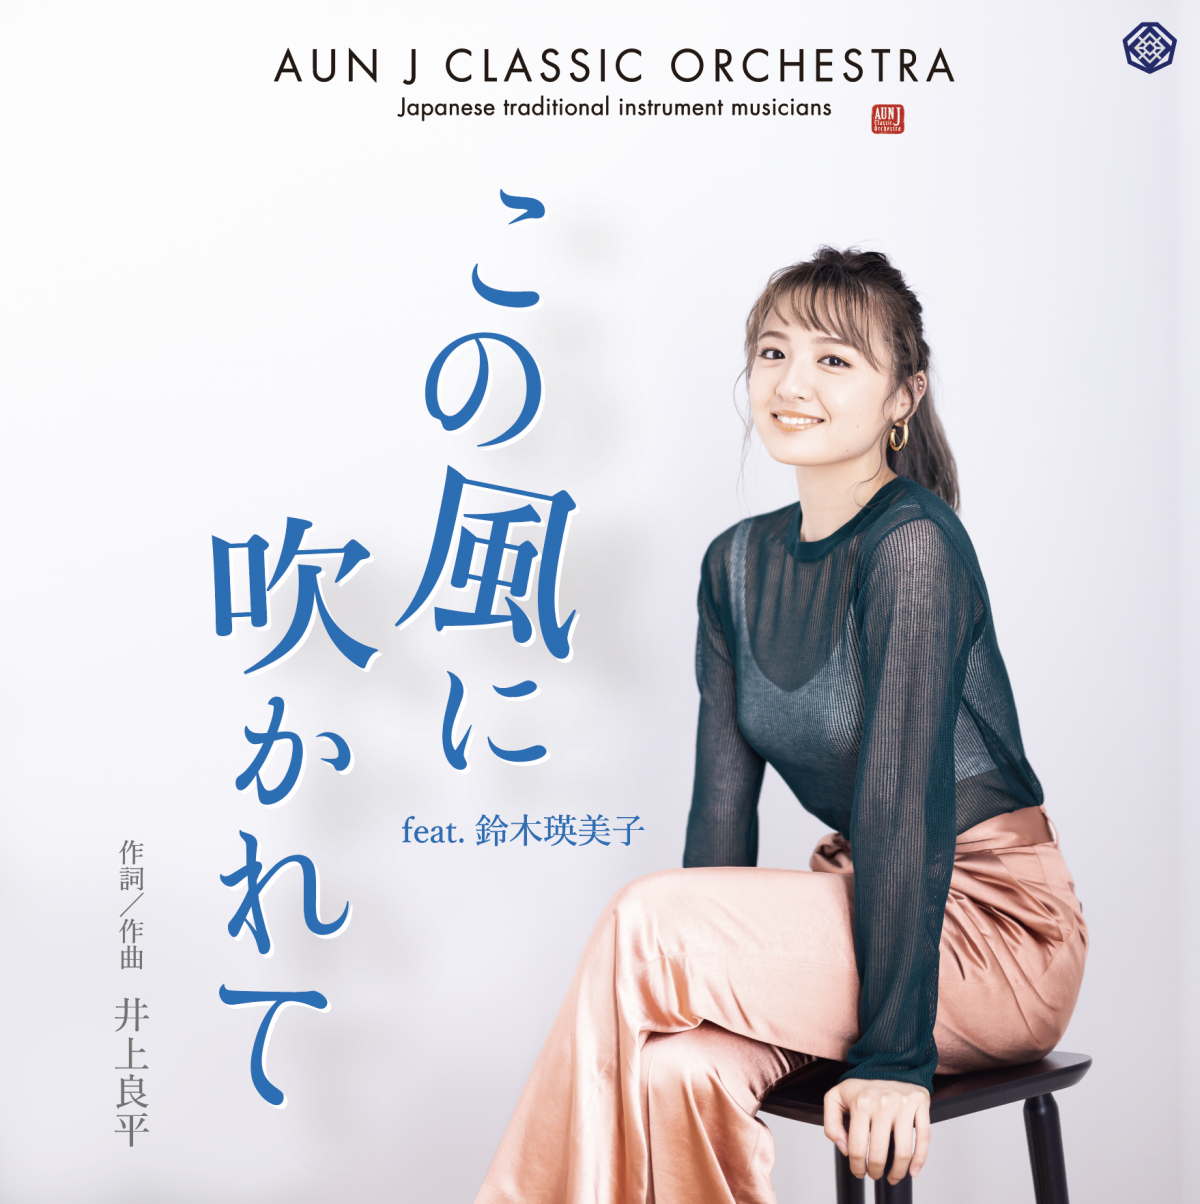 AUN J CLASSIC ORCHESTRA「この風に吹かれて feat.鈴木瑛美子」